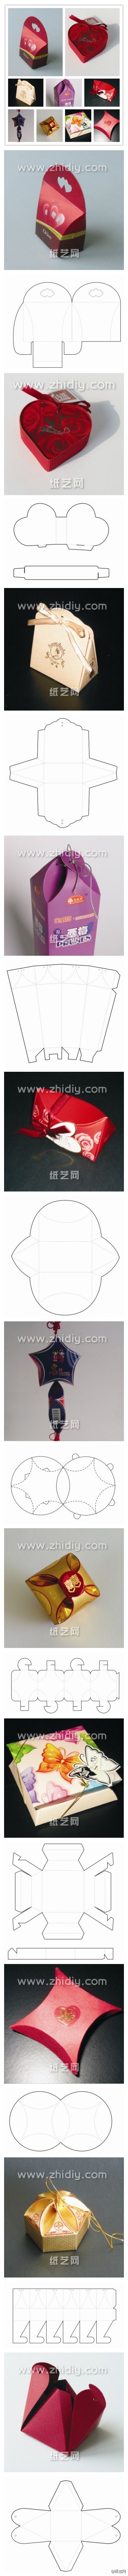 有了这么多的礼盒图纸，今后制作礼盒不再求人，绝对的自己动手丰衣足食，大号清晰图纸点击：http://www.zhidiy.com/shiyongzhiyi/4713/